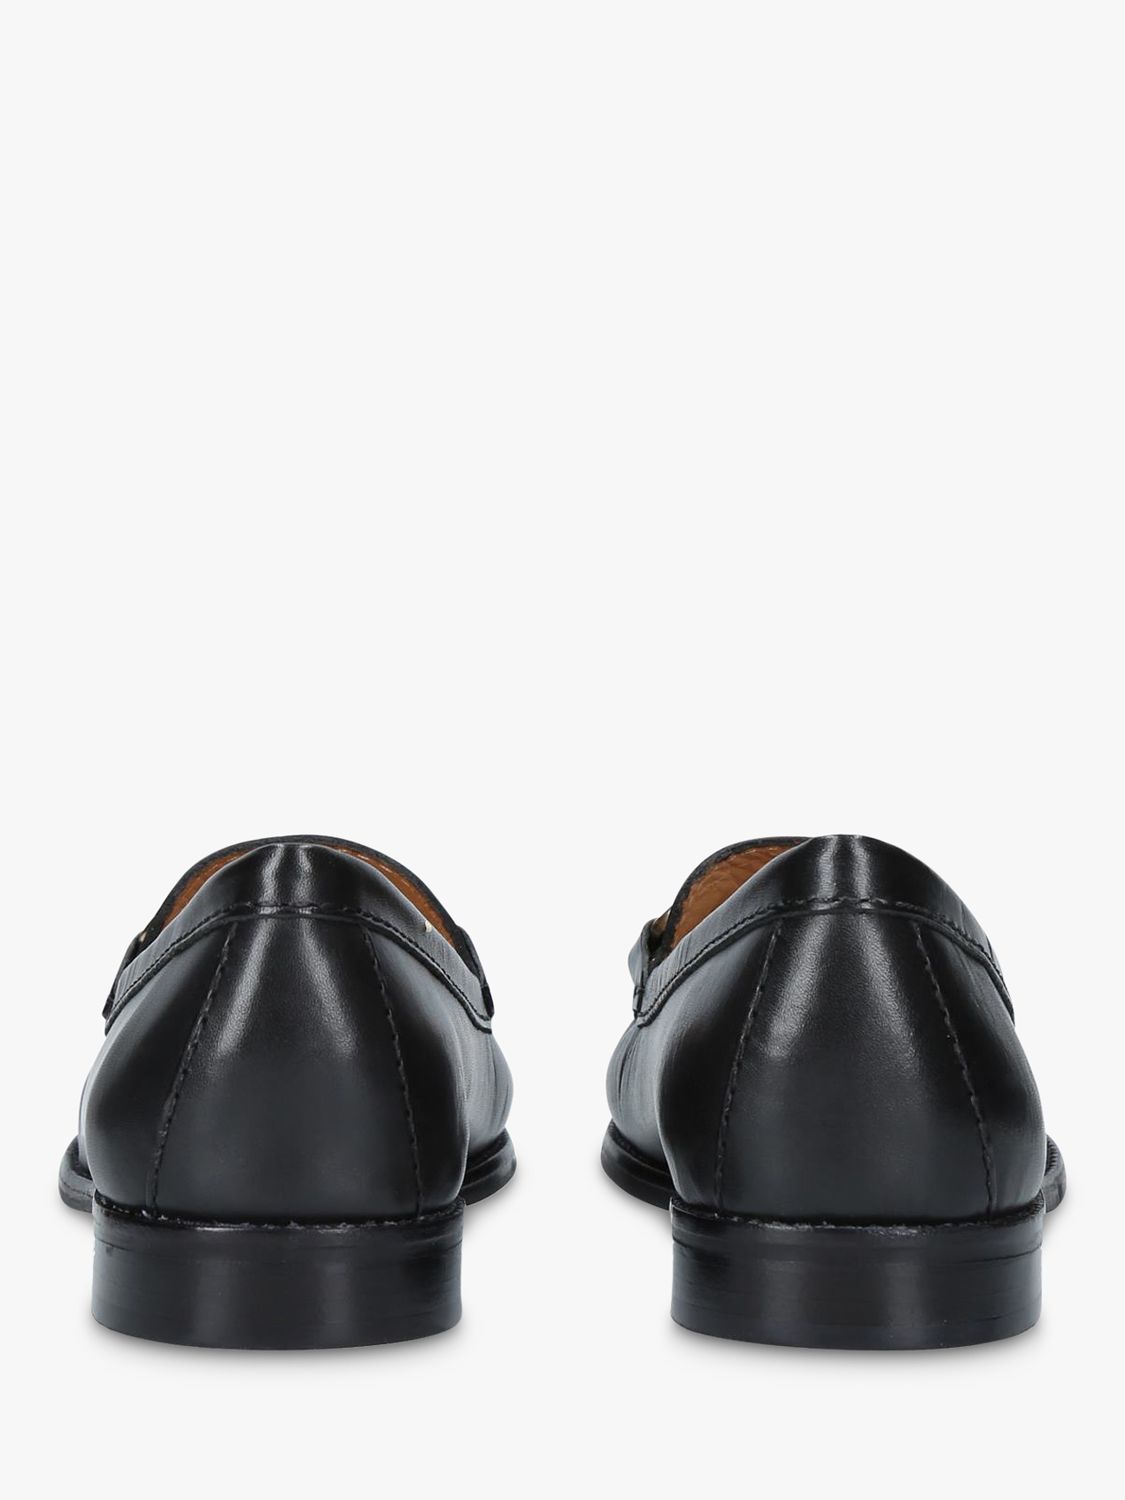 Carvela Comfort Click Loafers, Black at John Lewis & Partners